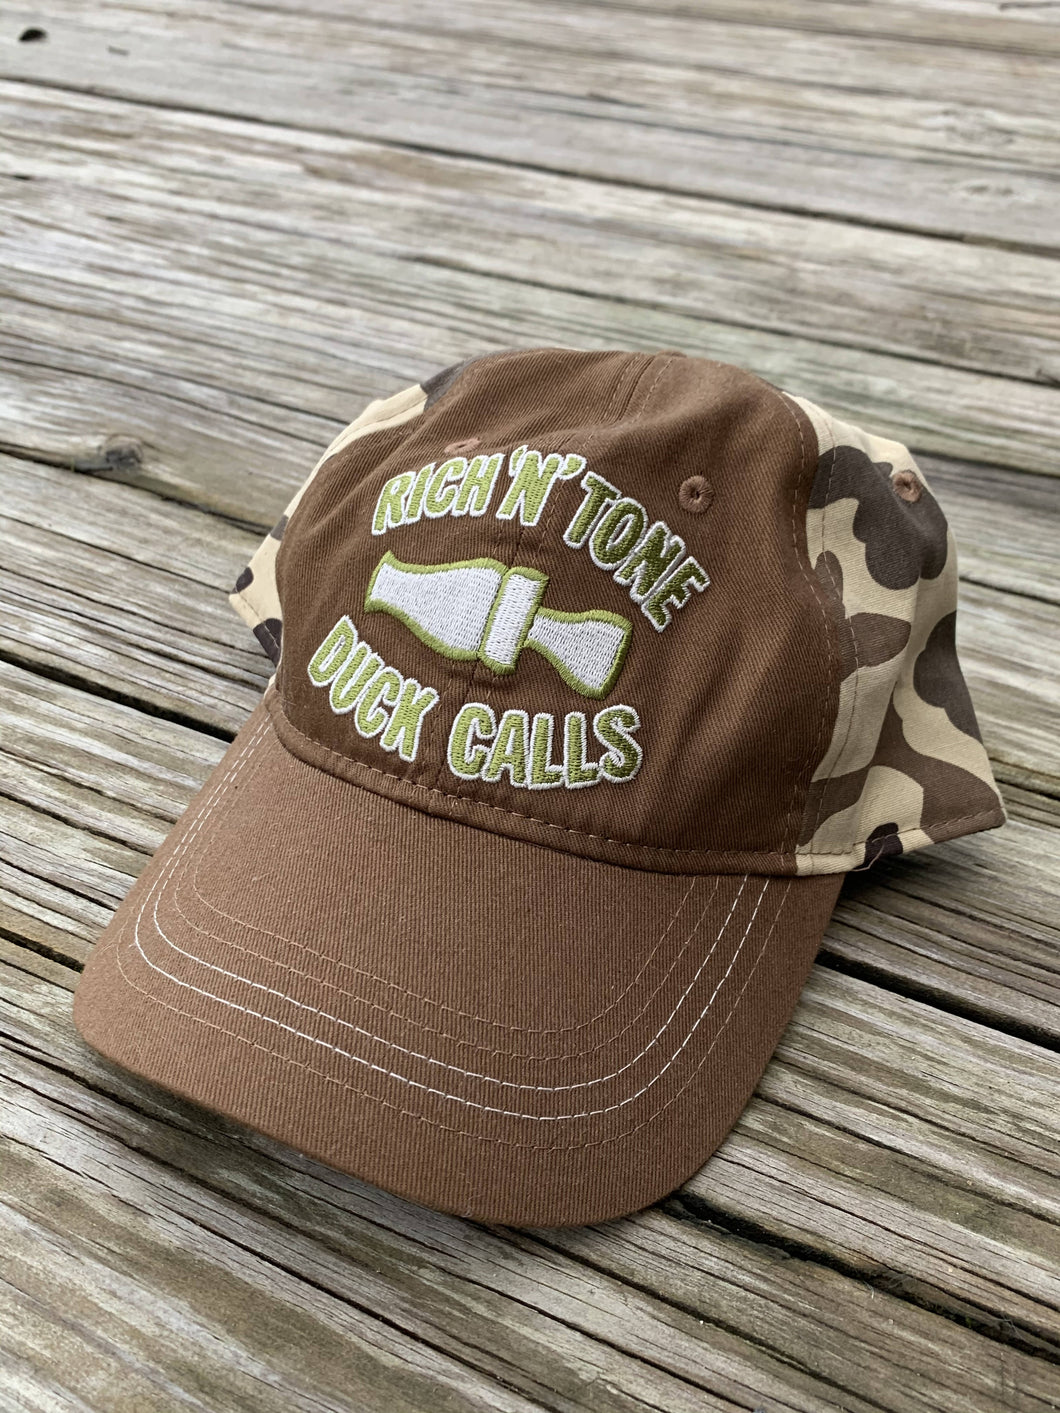 RNT Calls hat